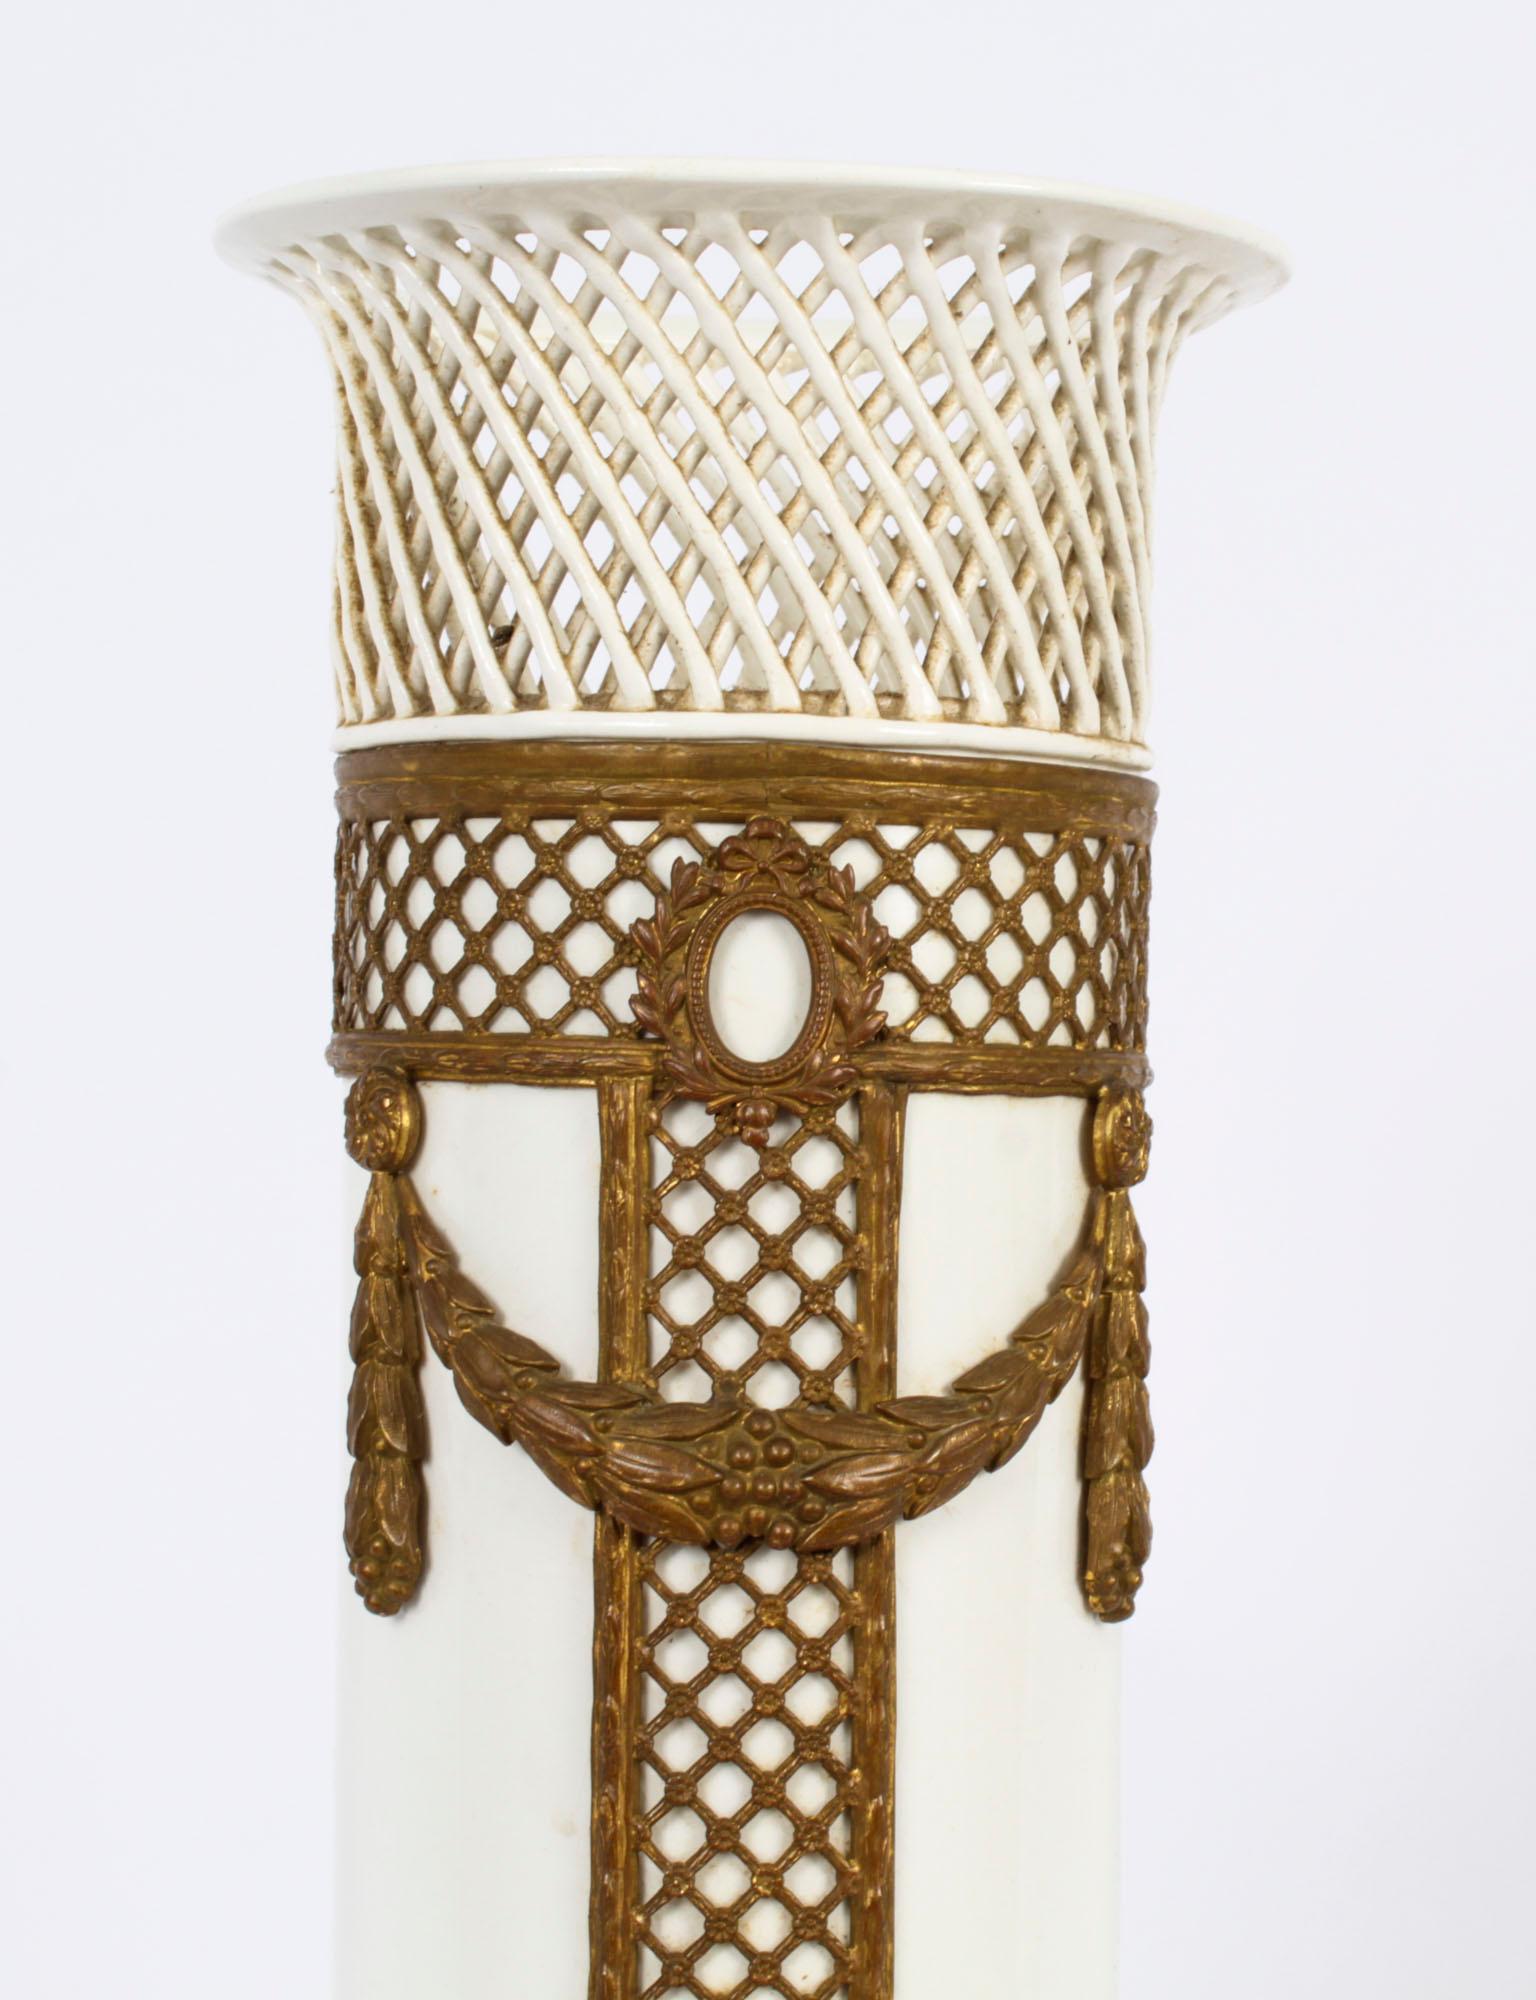 Voici un superbe vase de Zell Hammersbach en porcelaine et bronze doré, marqué par le fabricant et daté de 1882.

Ce vase provient de la petite ville allemande de Zell am Harmersbach, entre la Forêt-Noire et le Rhin. Cette ville a une longue